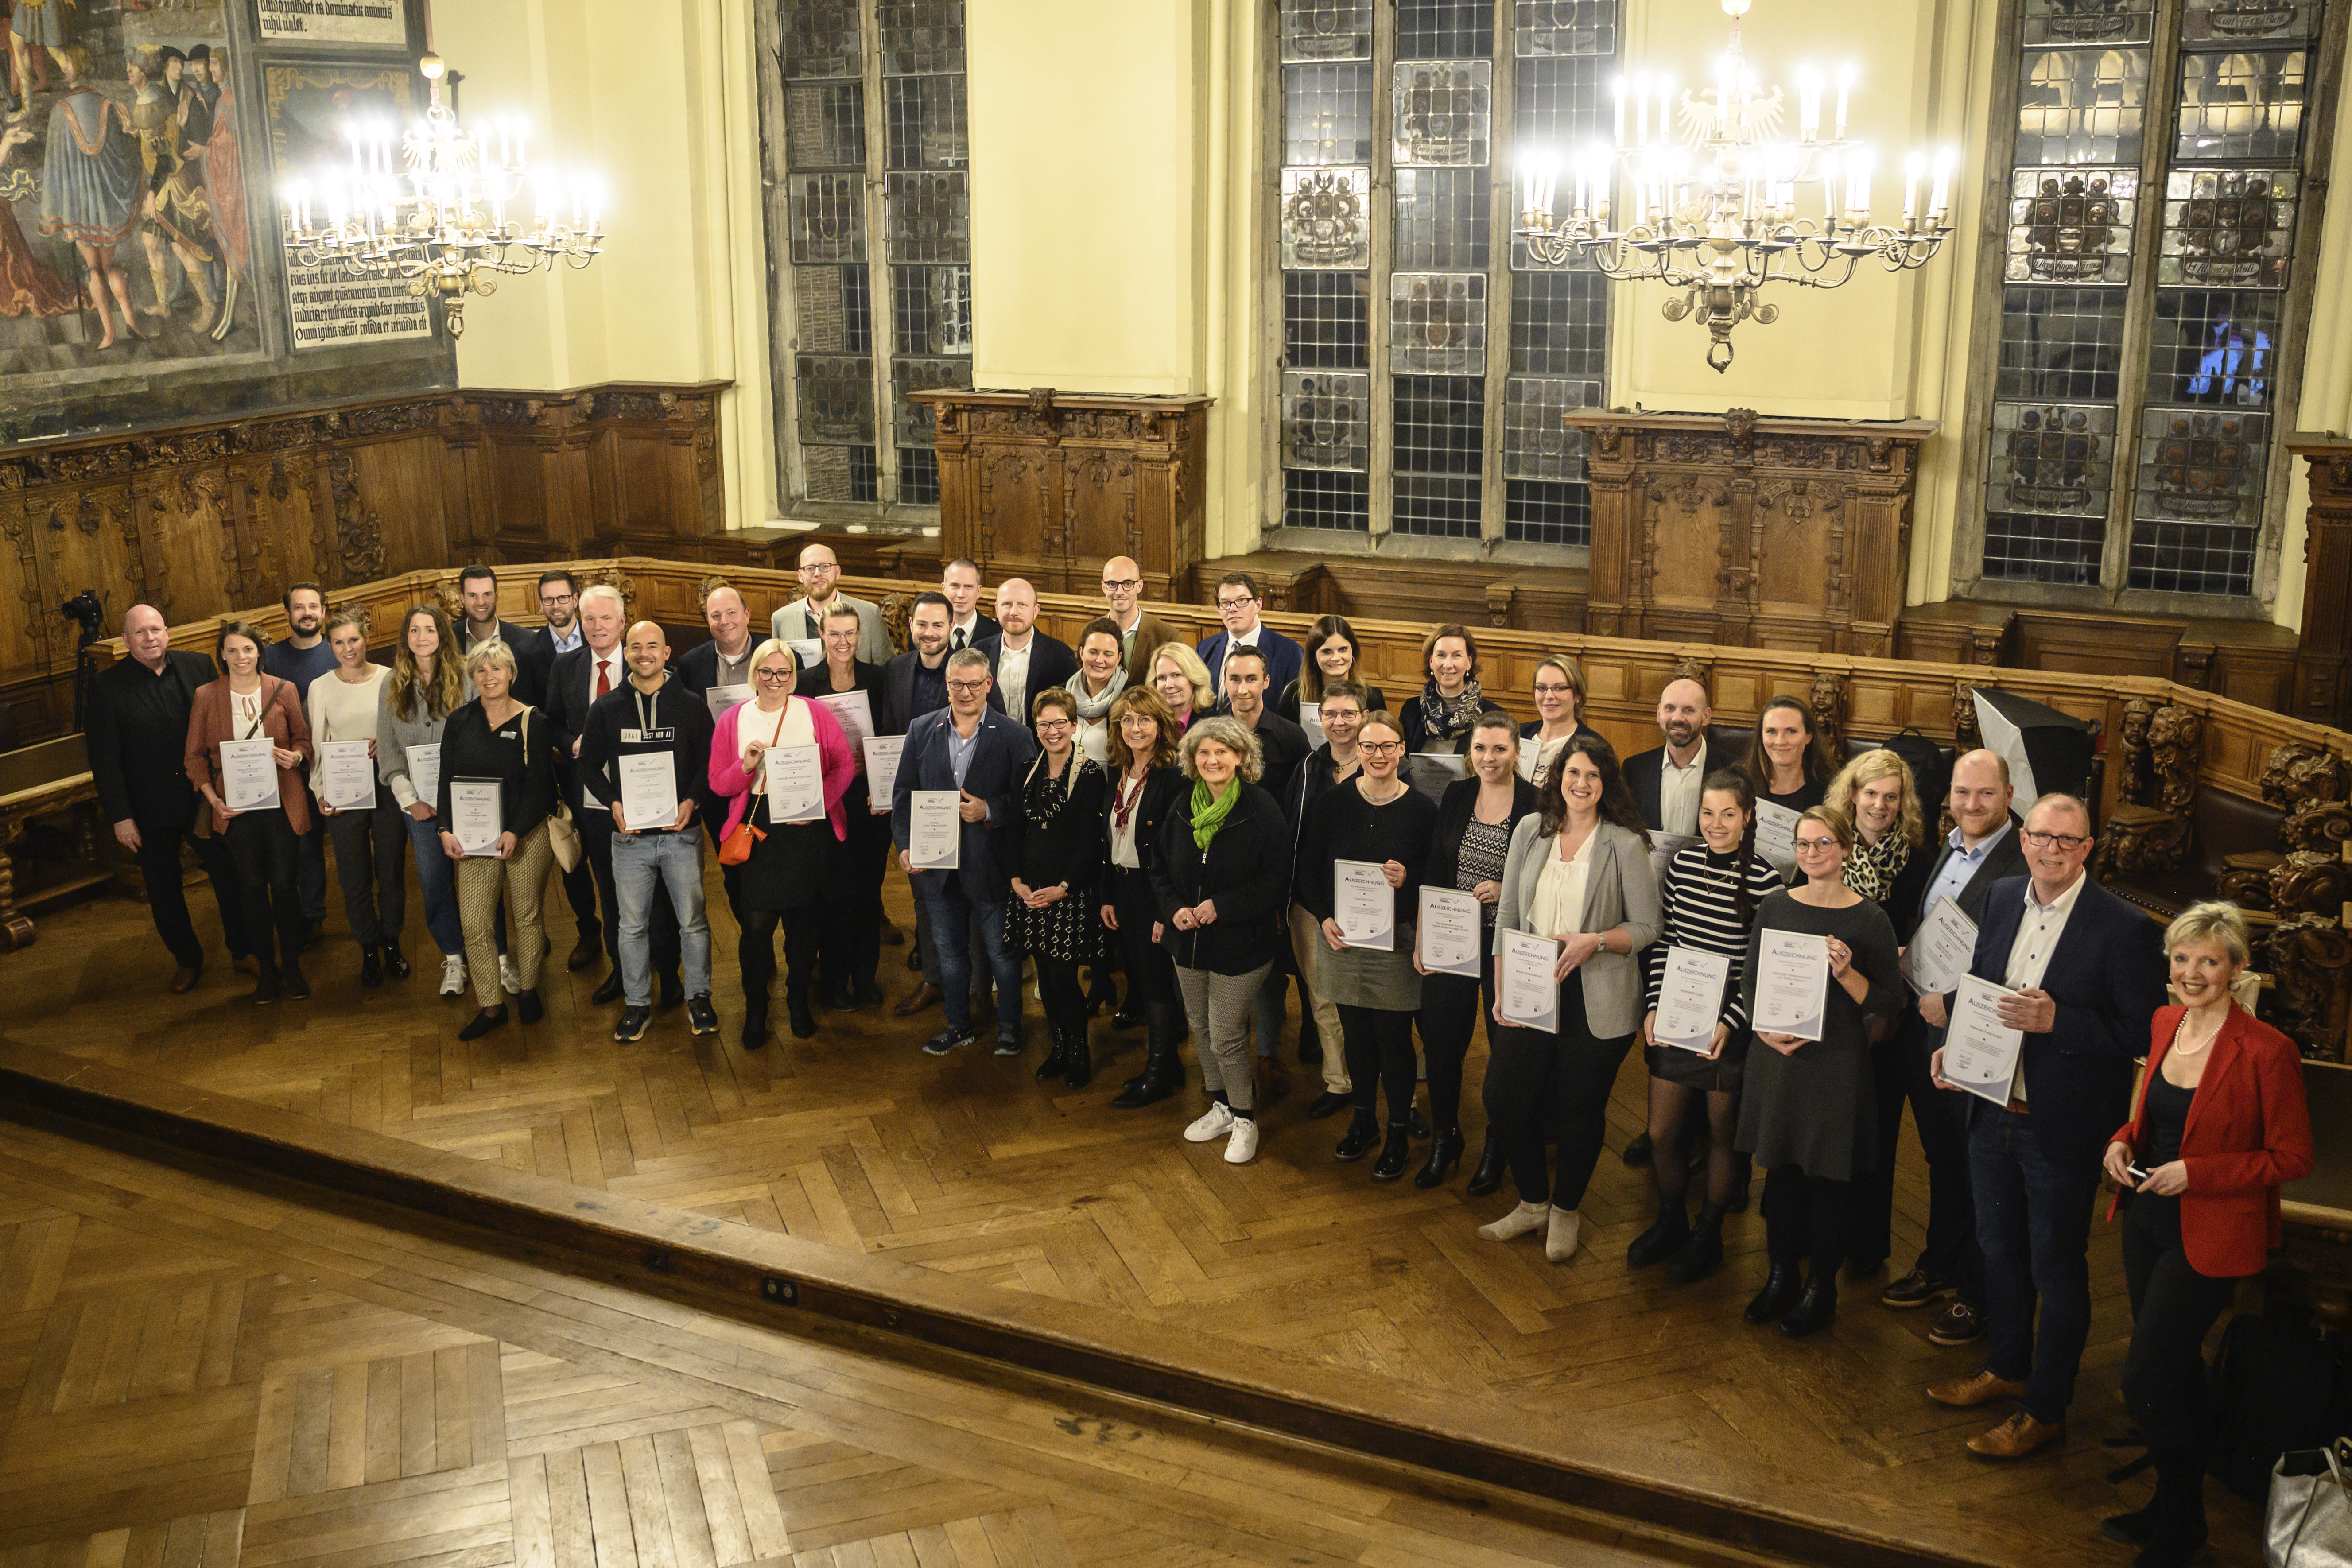 Preisträger bei Ausgezeichnet Familienfreundlich in der Oberen Rathaushalle in Bremen